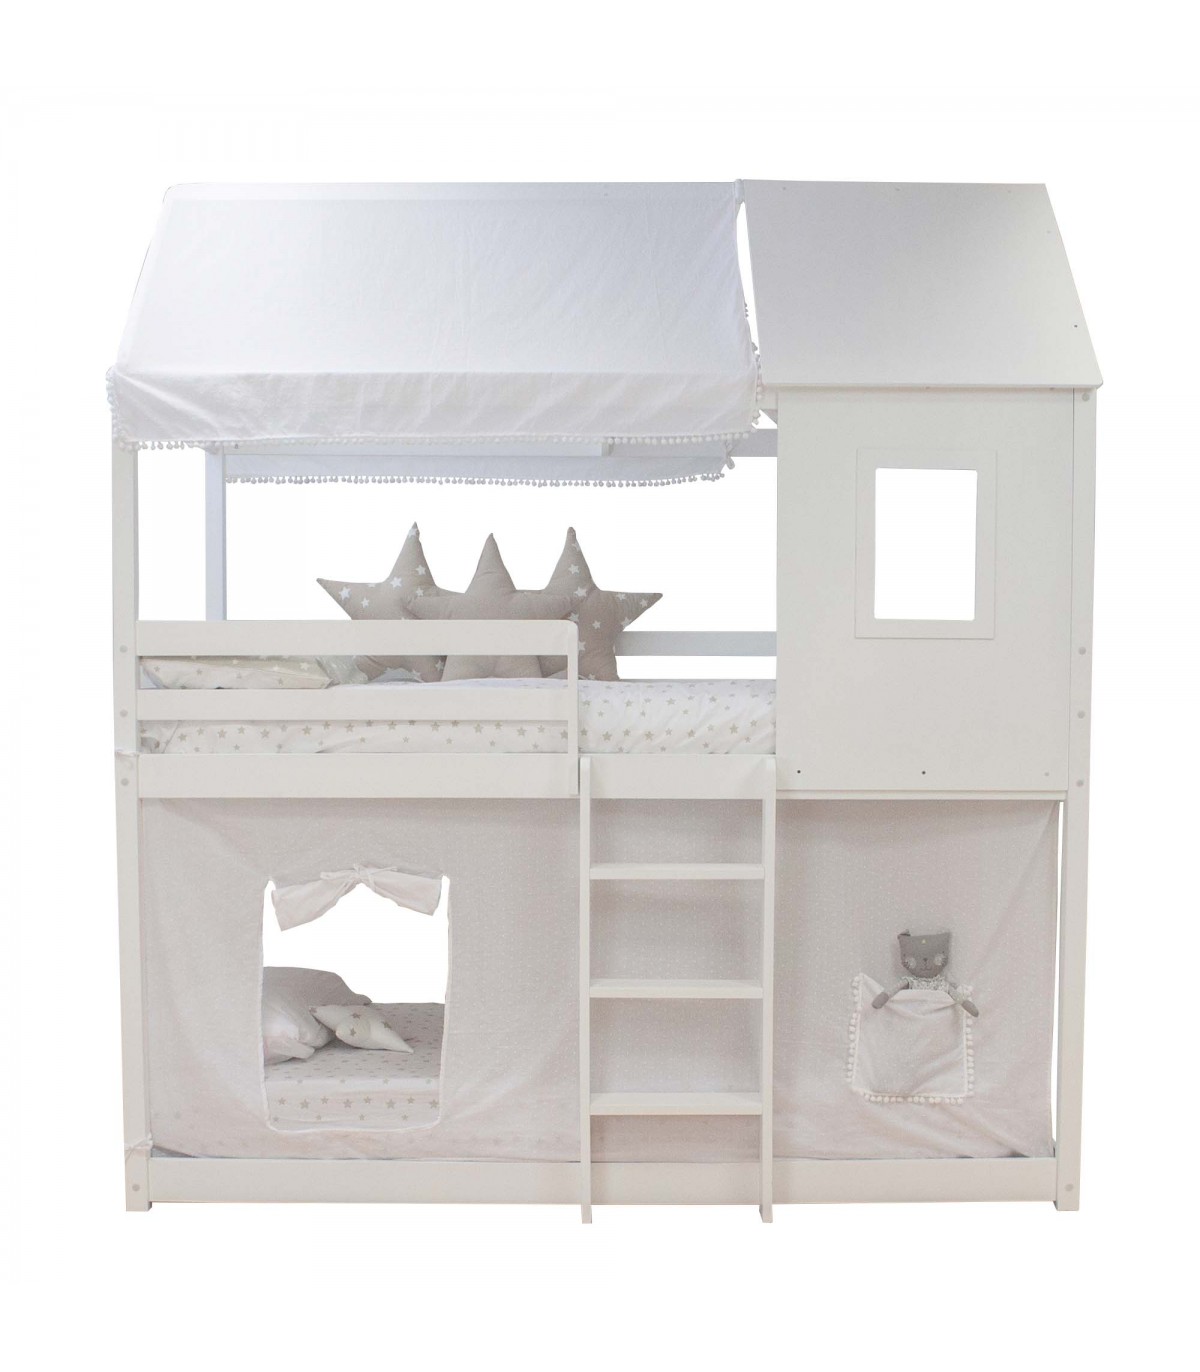 Techo para cama casita montessori - TMU0315B - doseles y techos de tela